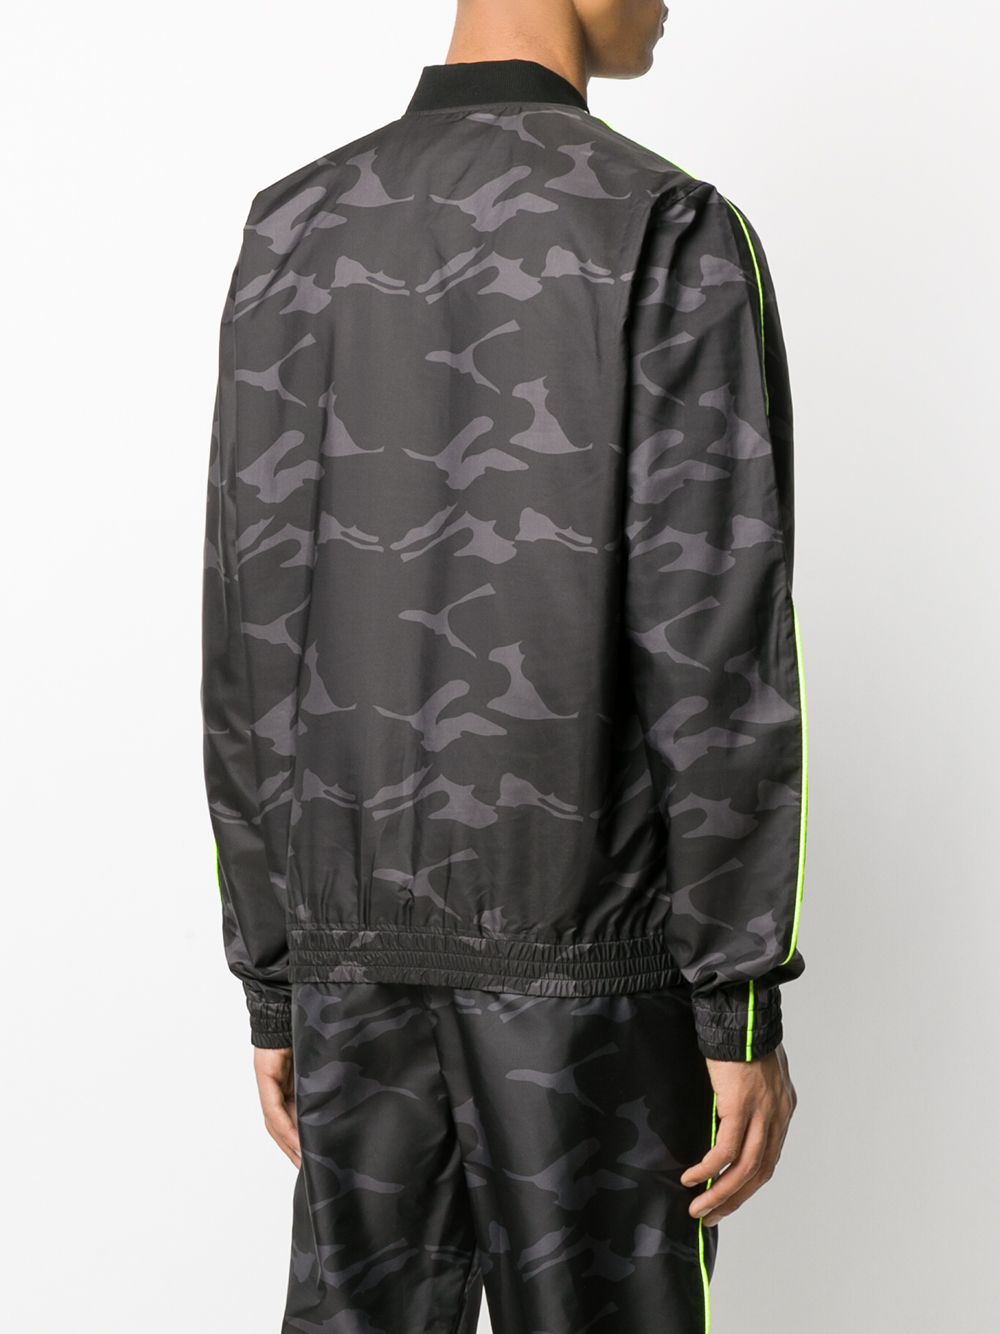 фото Hydrogen спортивная куртка с камуфляжным принтом